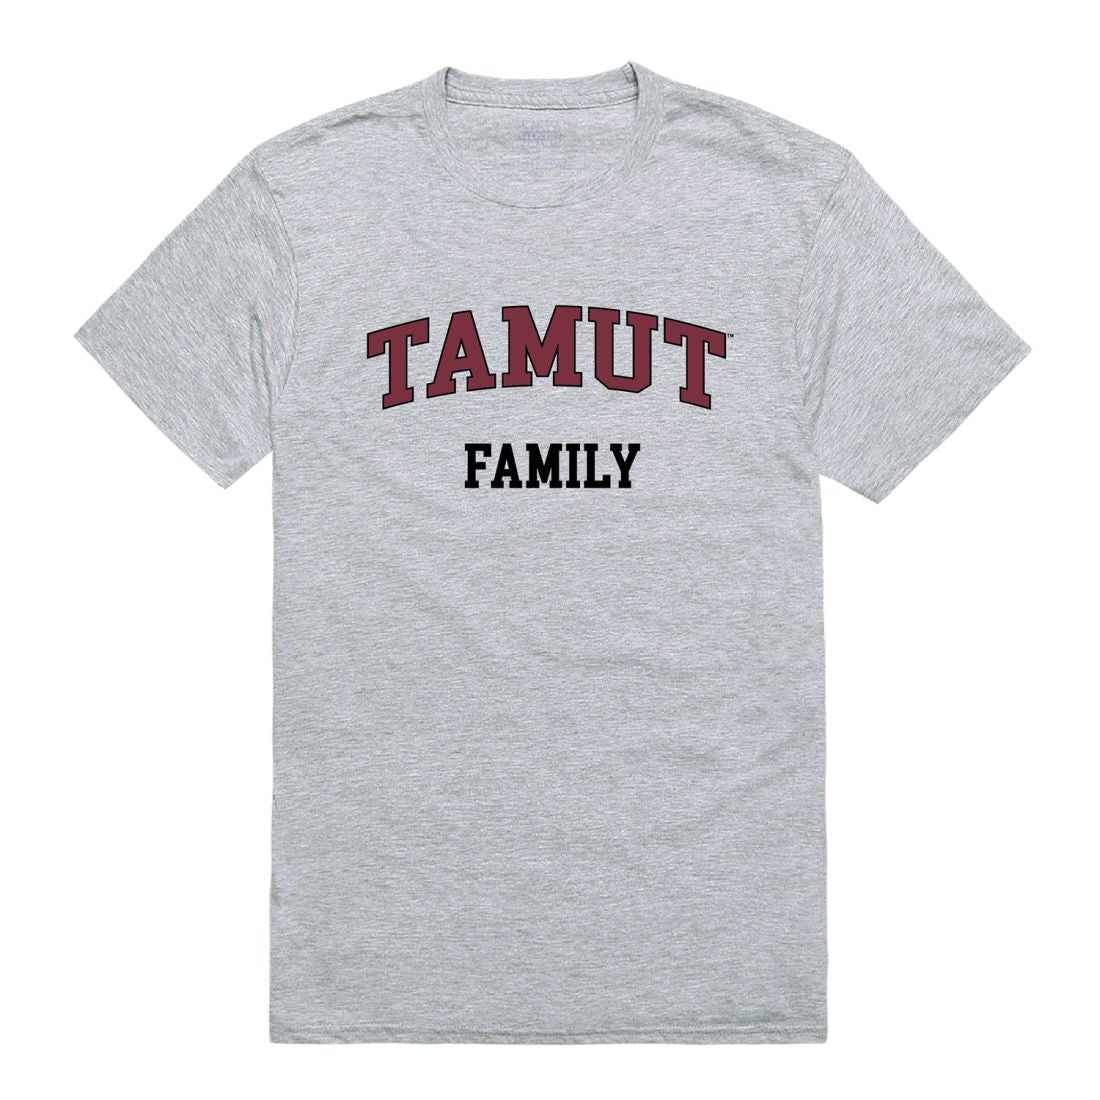 Texas A&M University-Texarkana Eagles Family T-Shirt